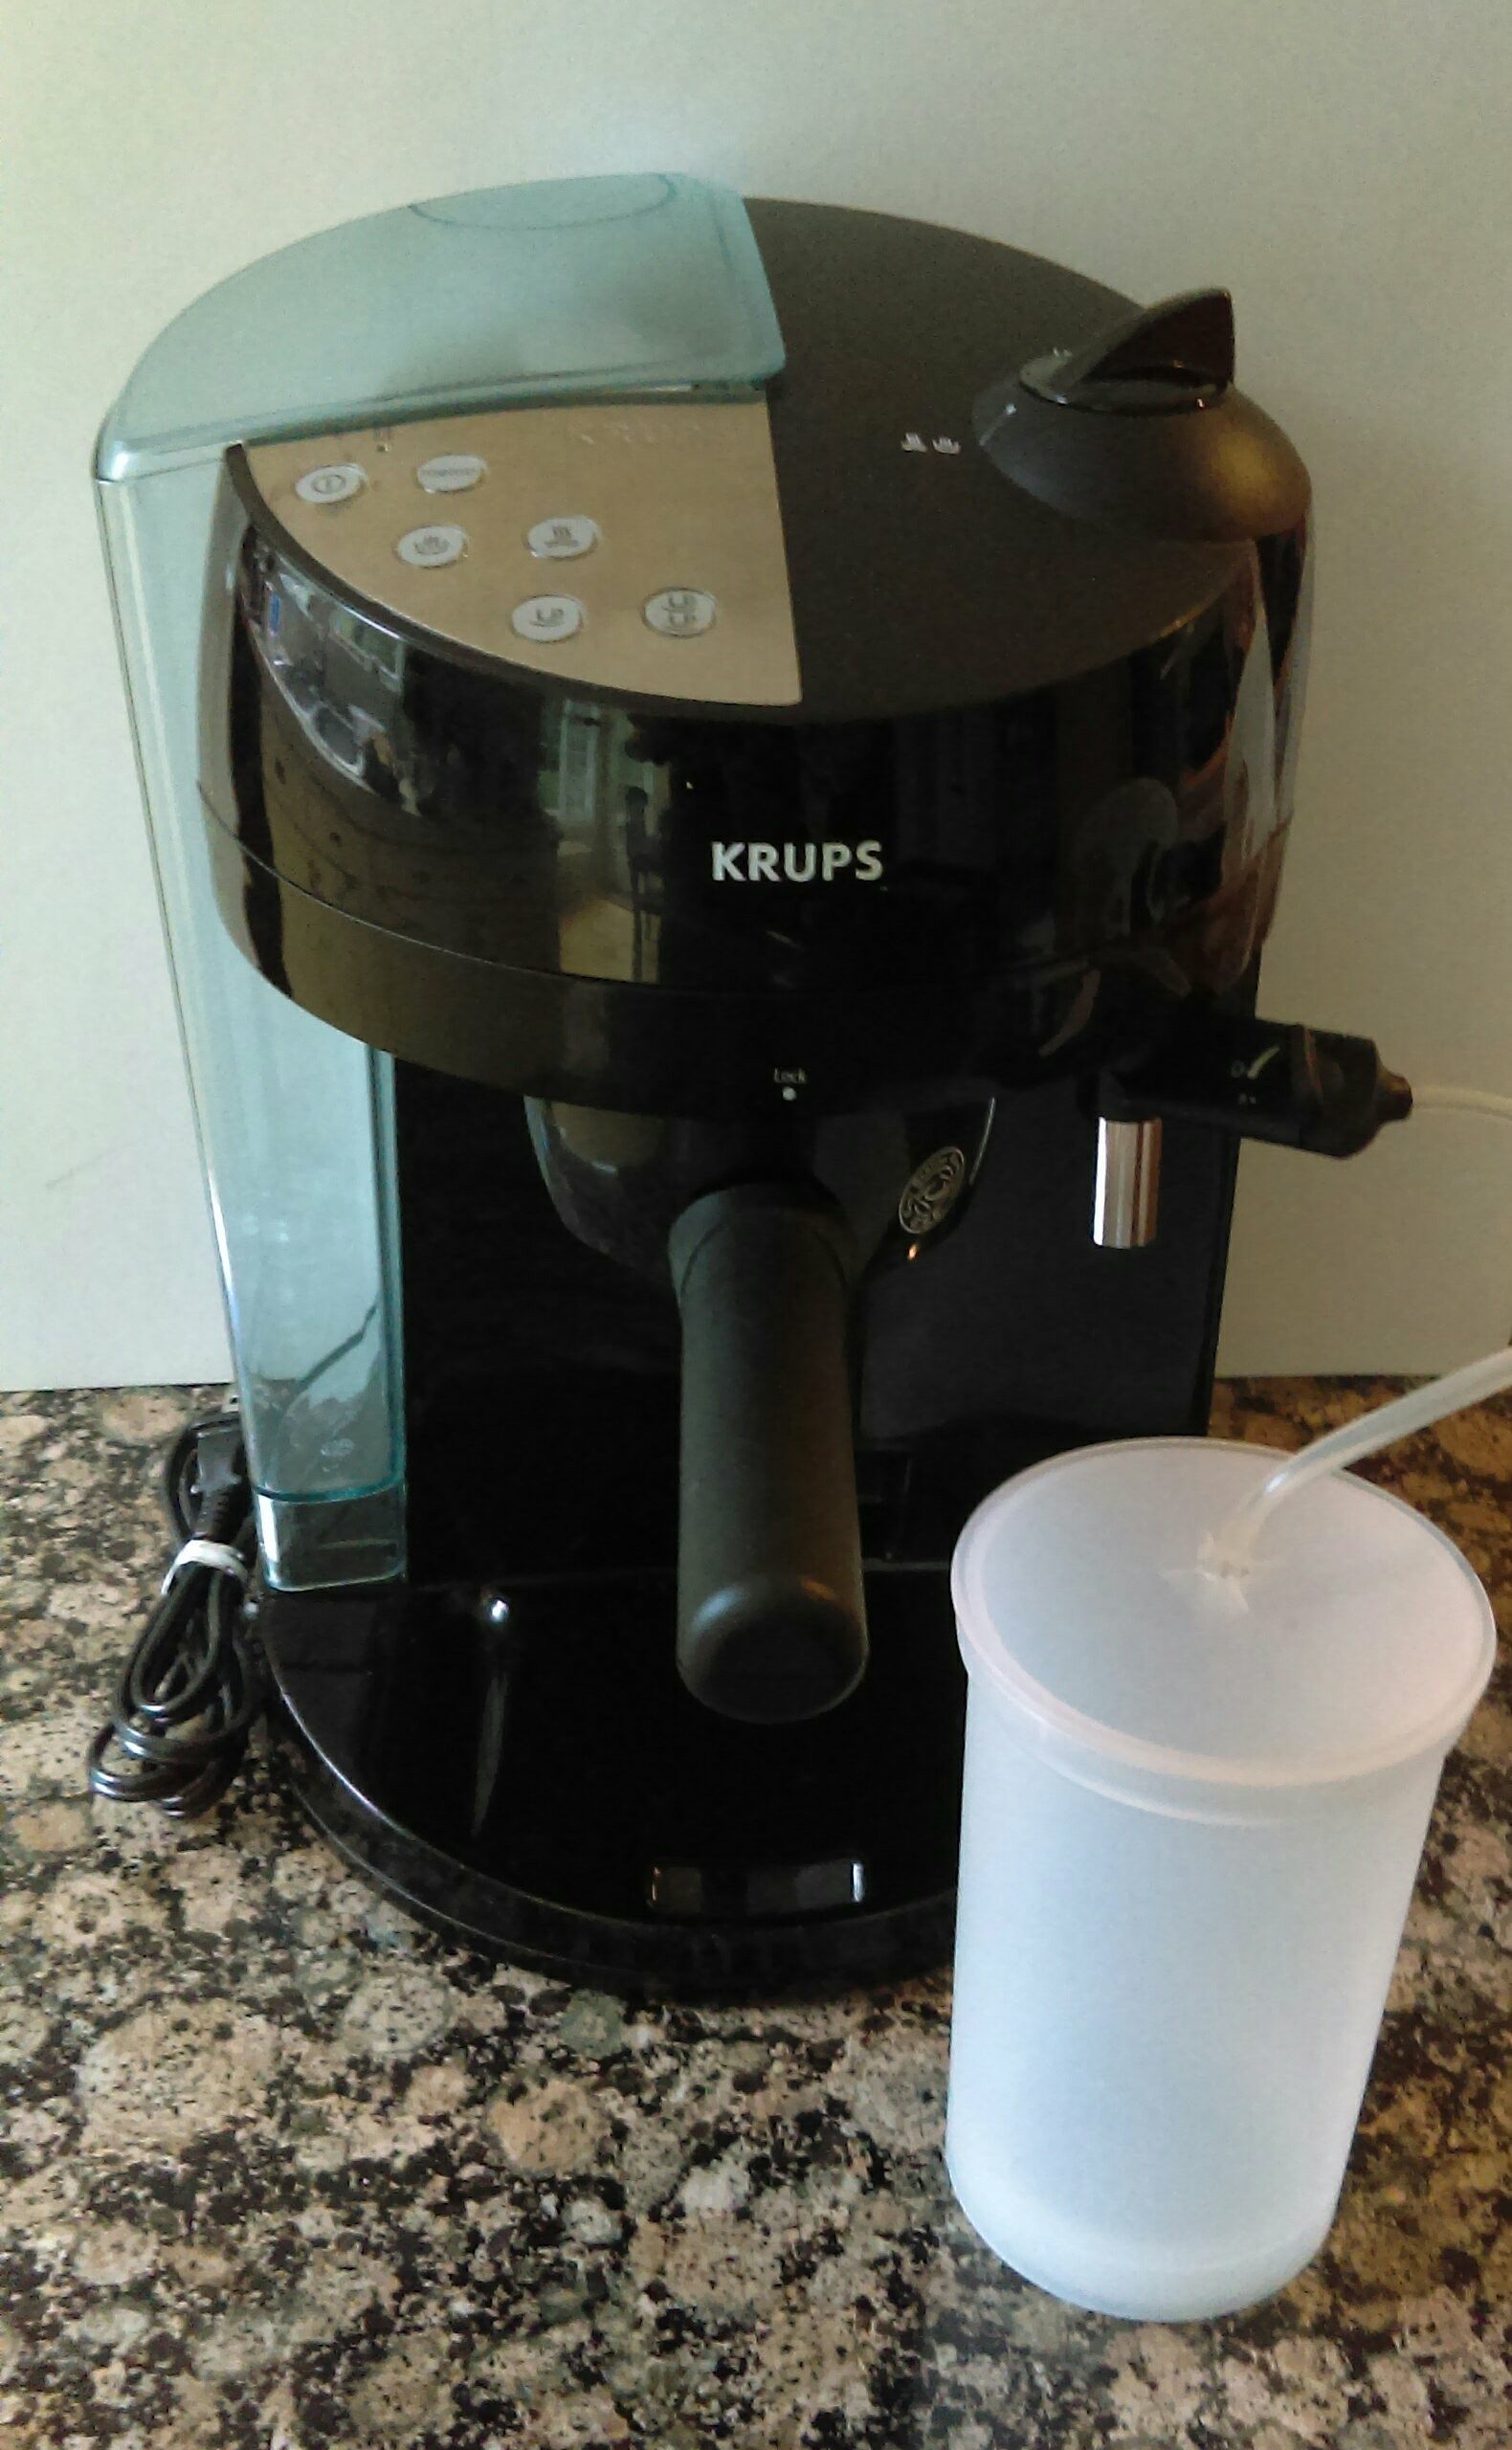 Krups Coffee Maker / Espresso Maker for Sale in Phoenix, AZ - OfferUp